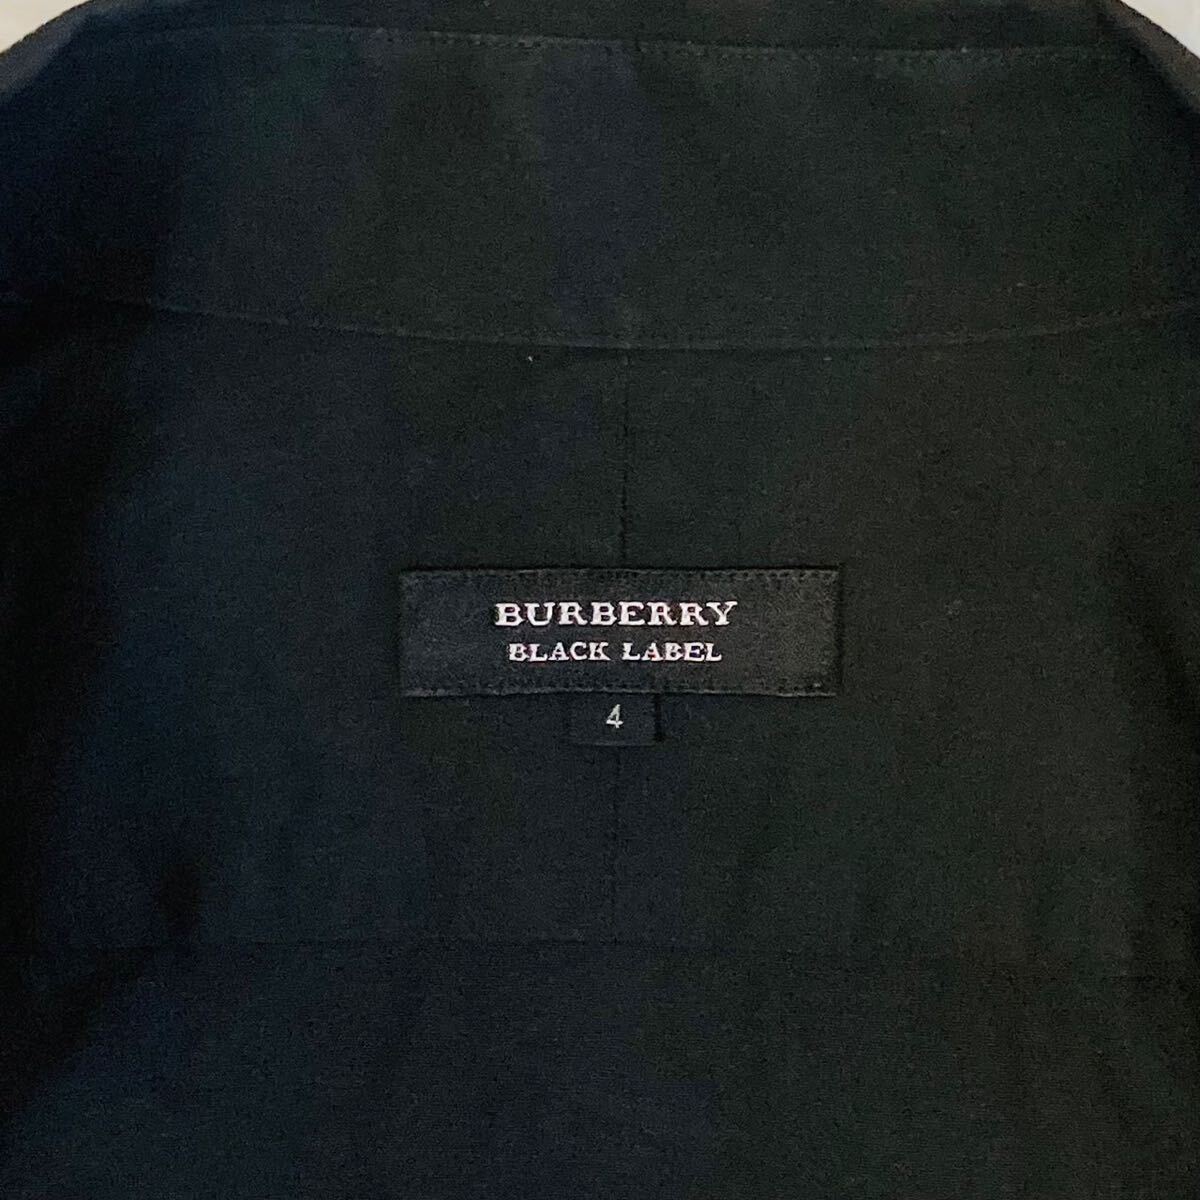 美品! 超希少XL(4) バーバリーブラックレーベル 長袖シャツ ホース刺繍 前立てノバチェック ボタンダウン 日本製 黒 BURBERRY BLACK LABELの画像7